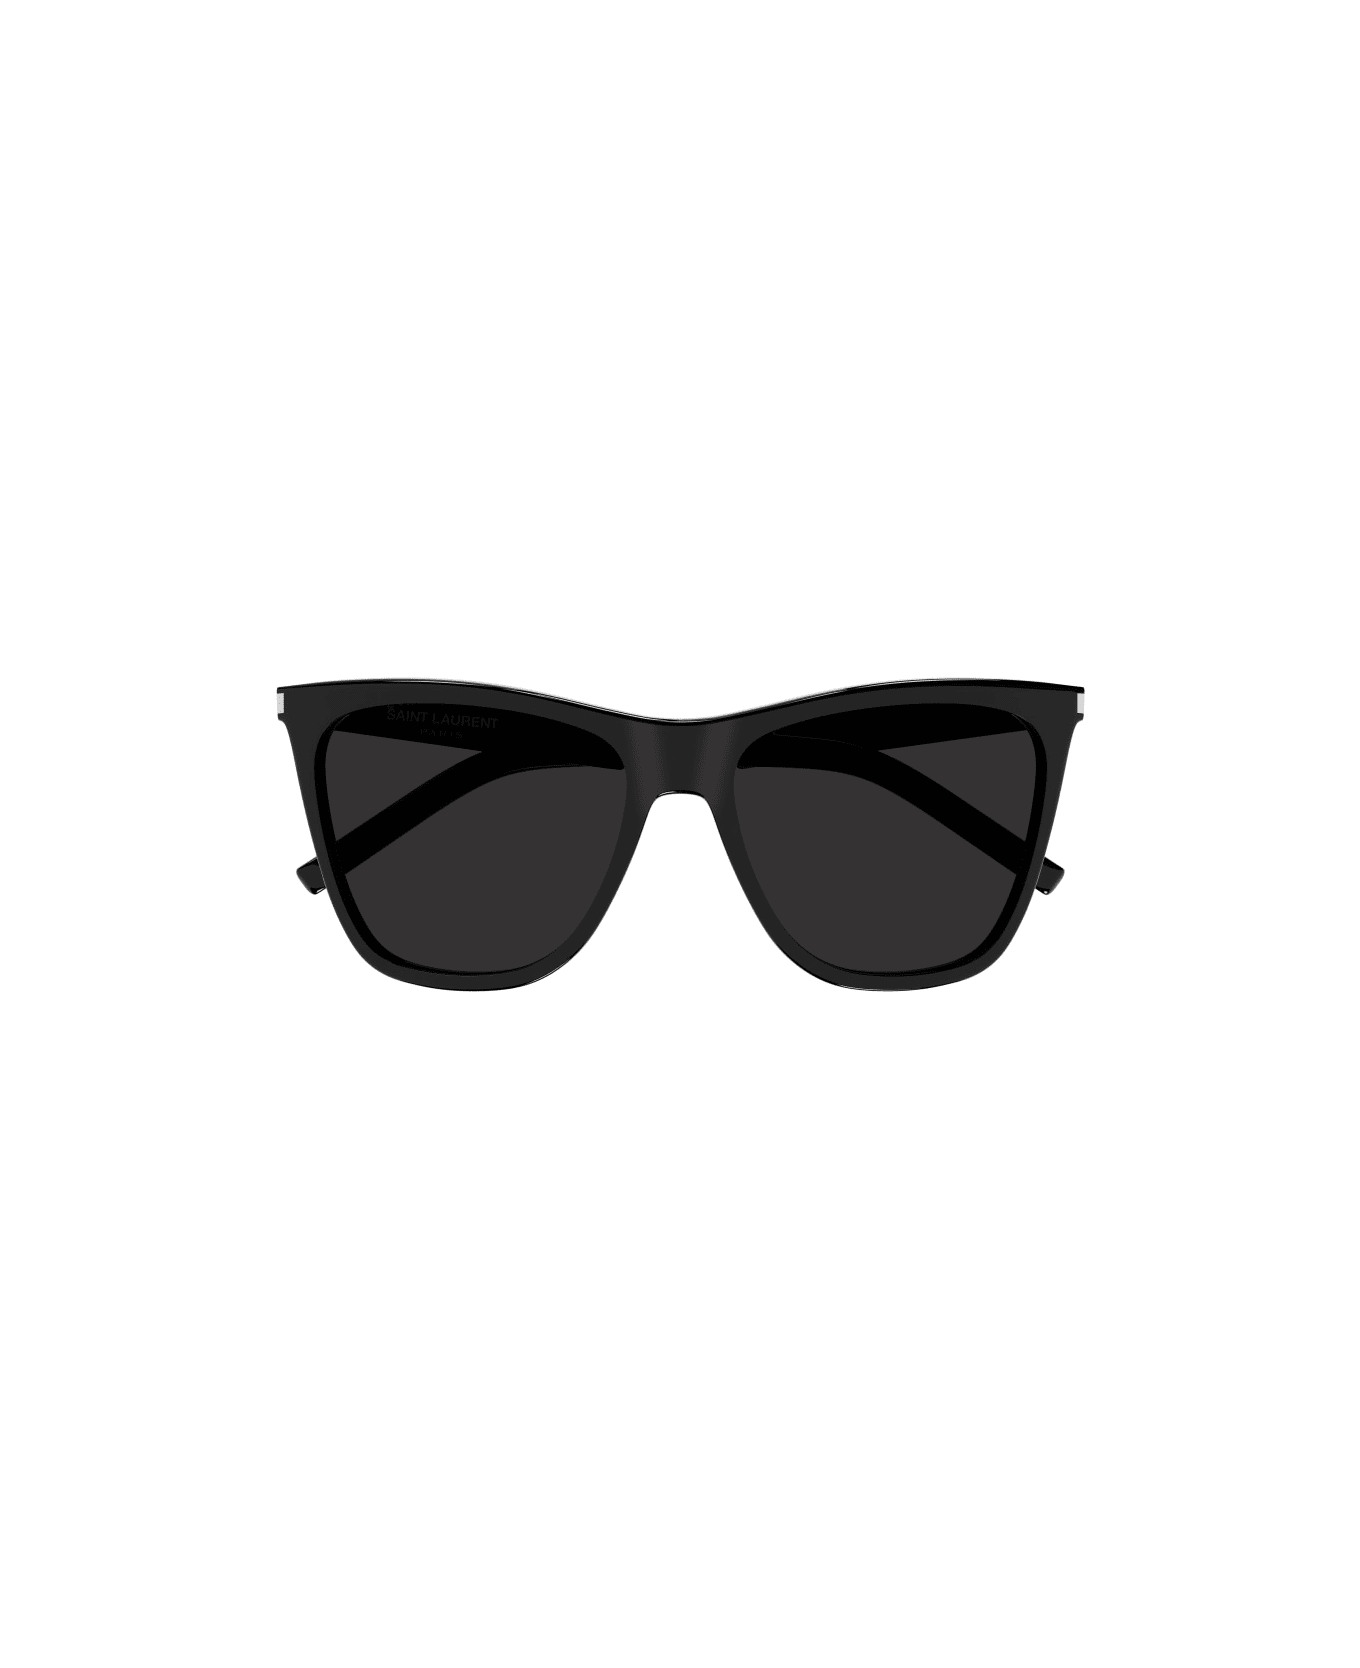 Saint Laurent Eyewear SL 526 Sunglasses - Black Black Black